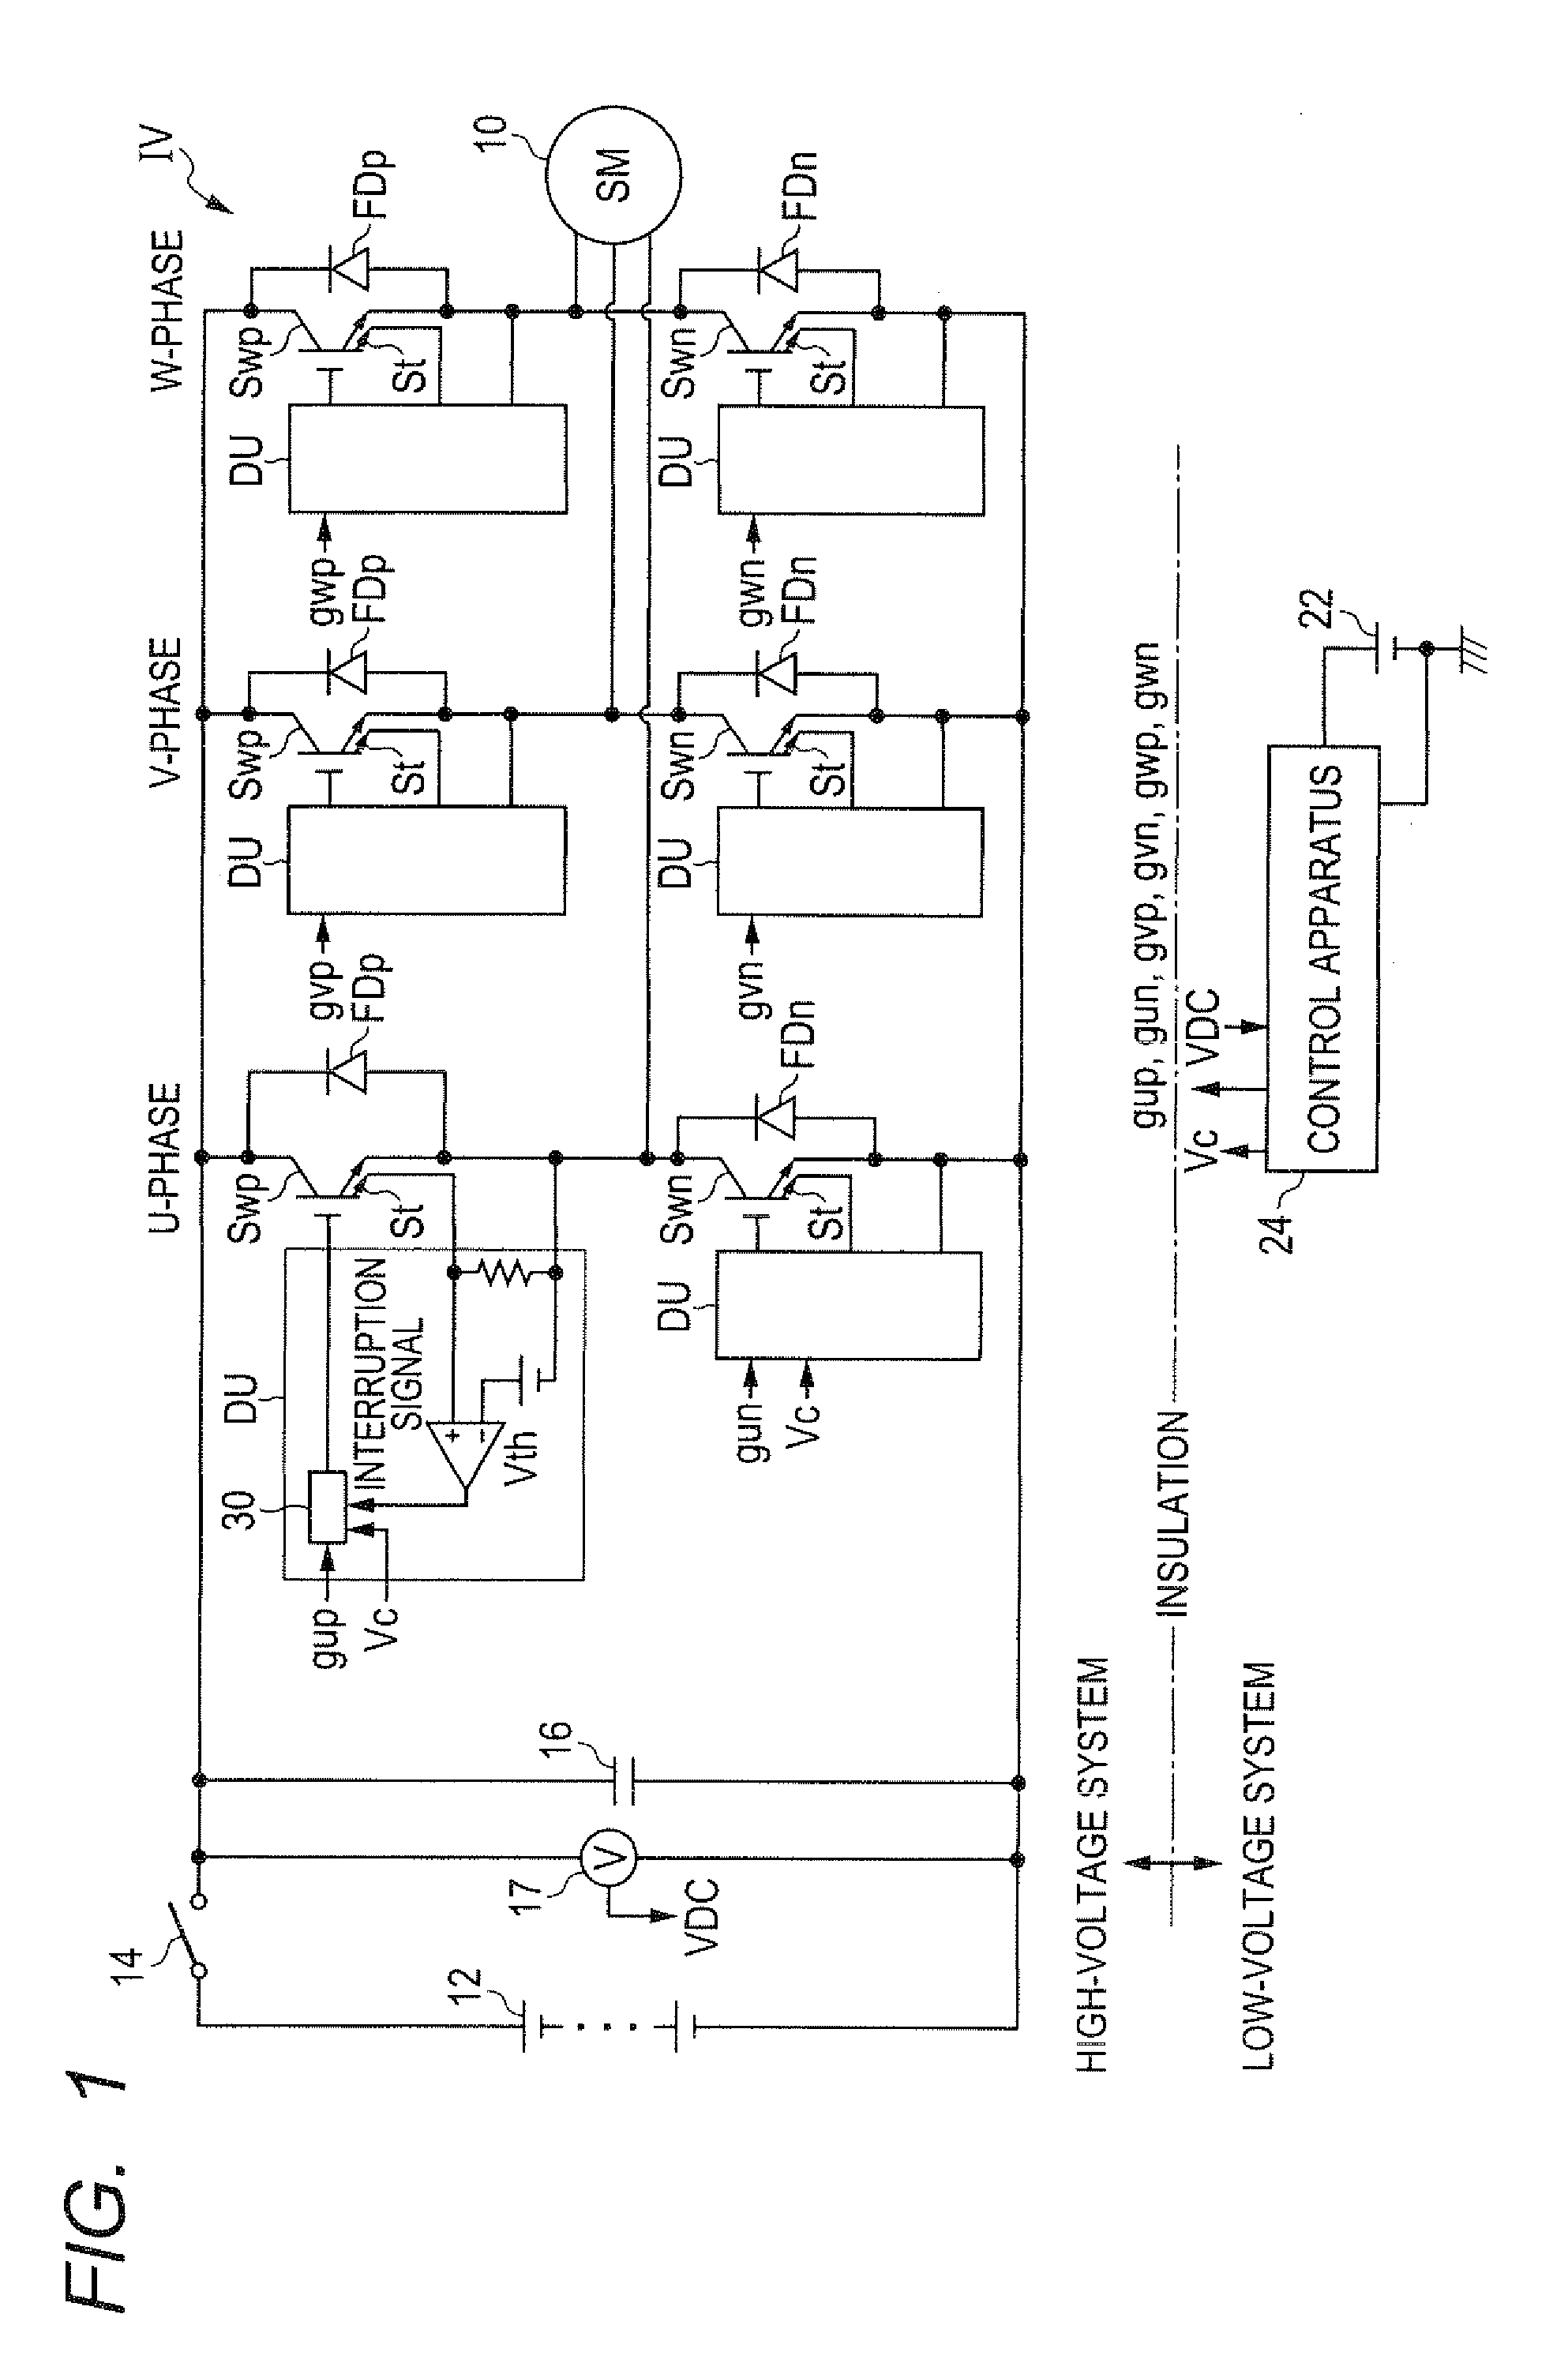 Power conversion control apparatus